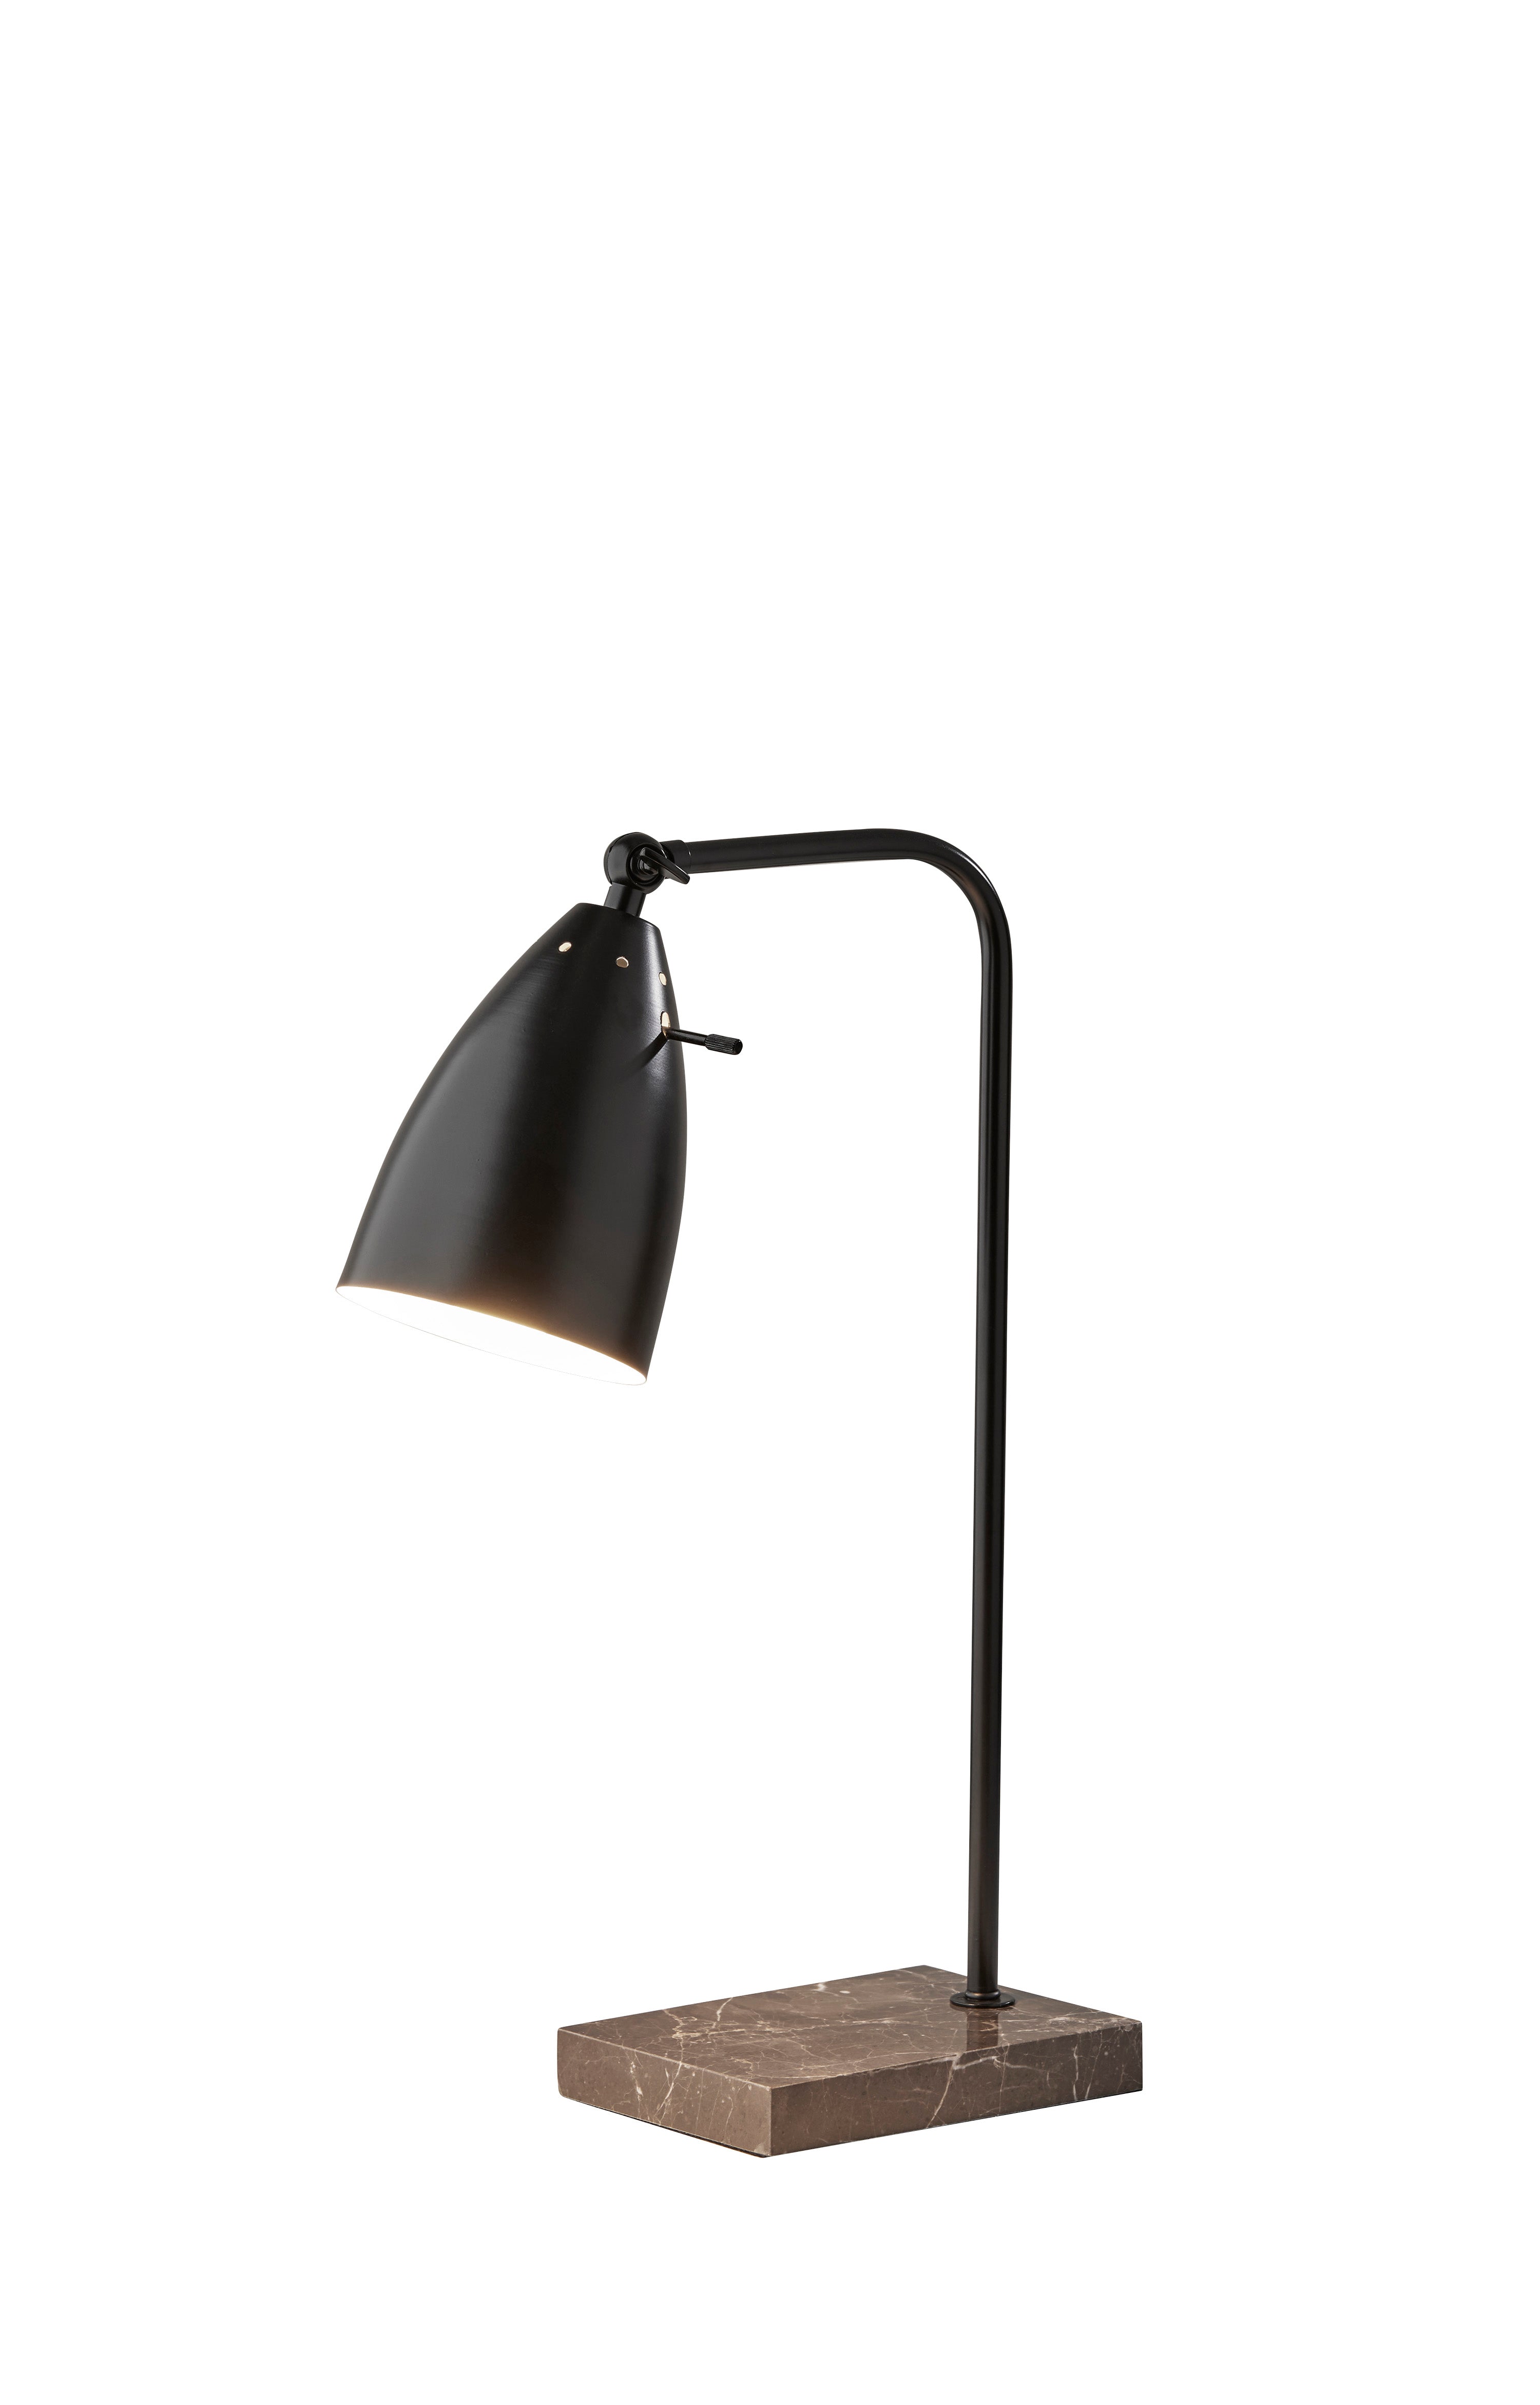 VINCENT Lampe sur table Noir - 4112-01 | ADESSO